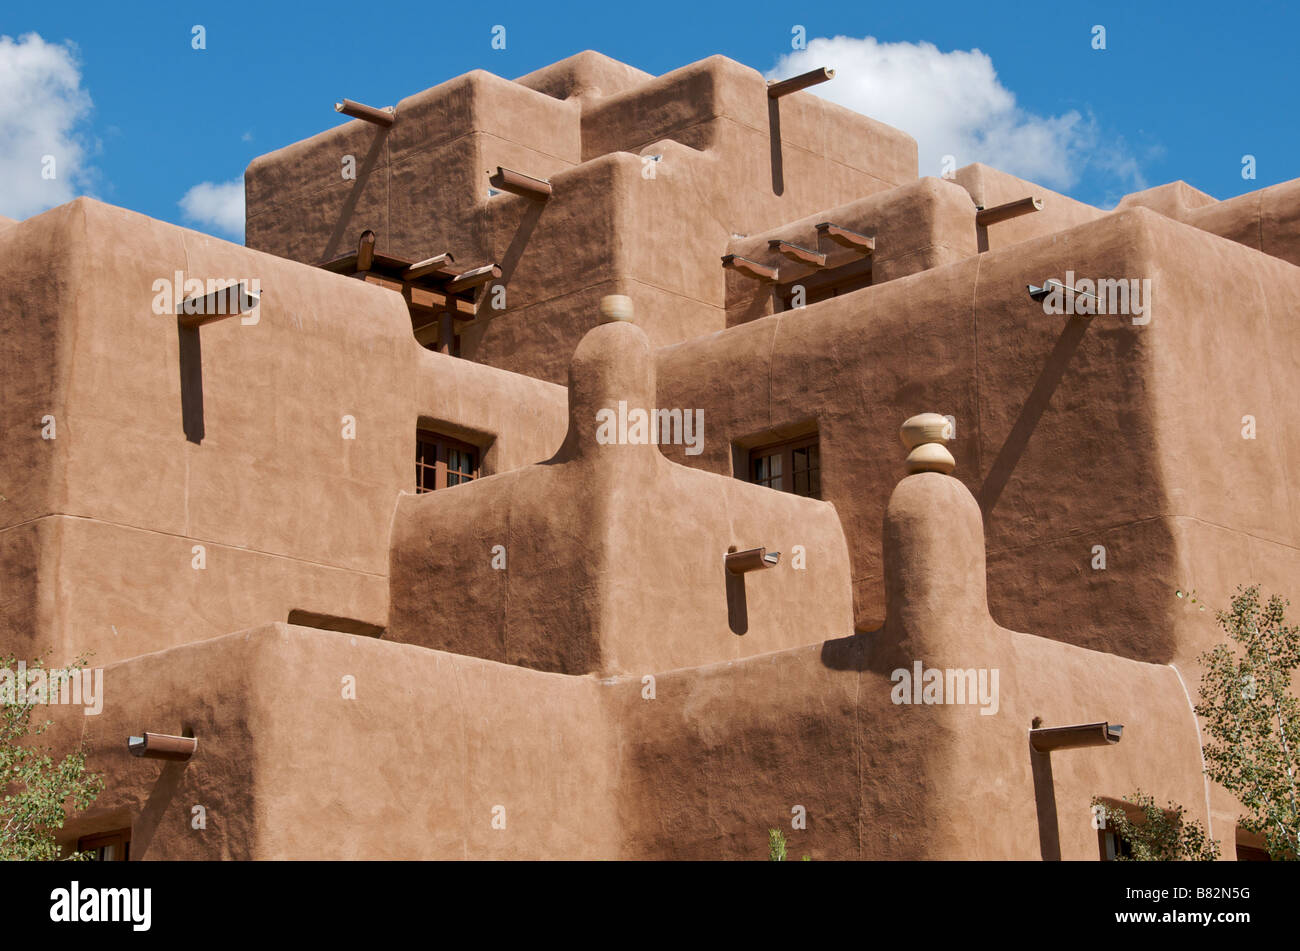 Bâtiment moderne typique de l'architecture d'adobe Santa Fe New Mexico USA Banque D'Images